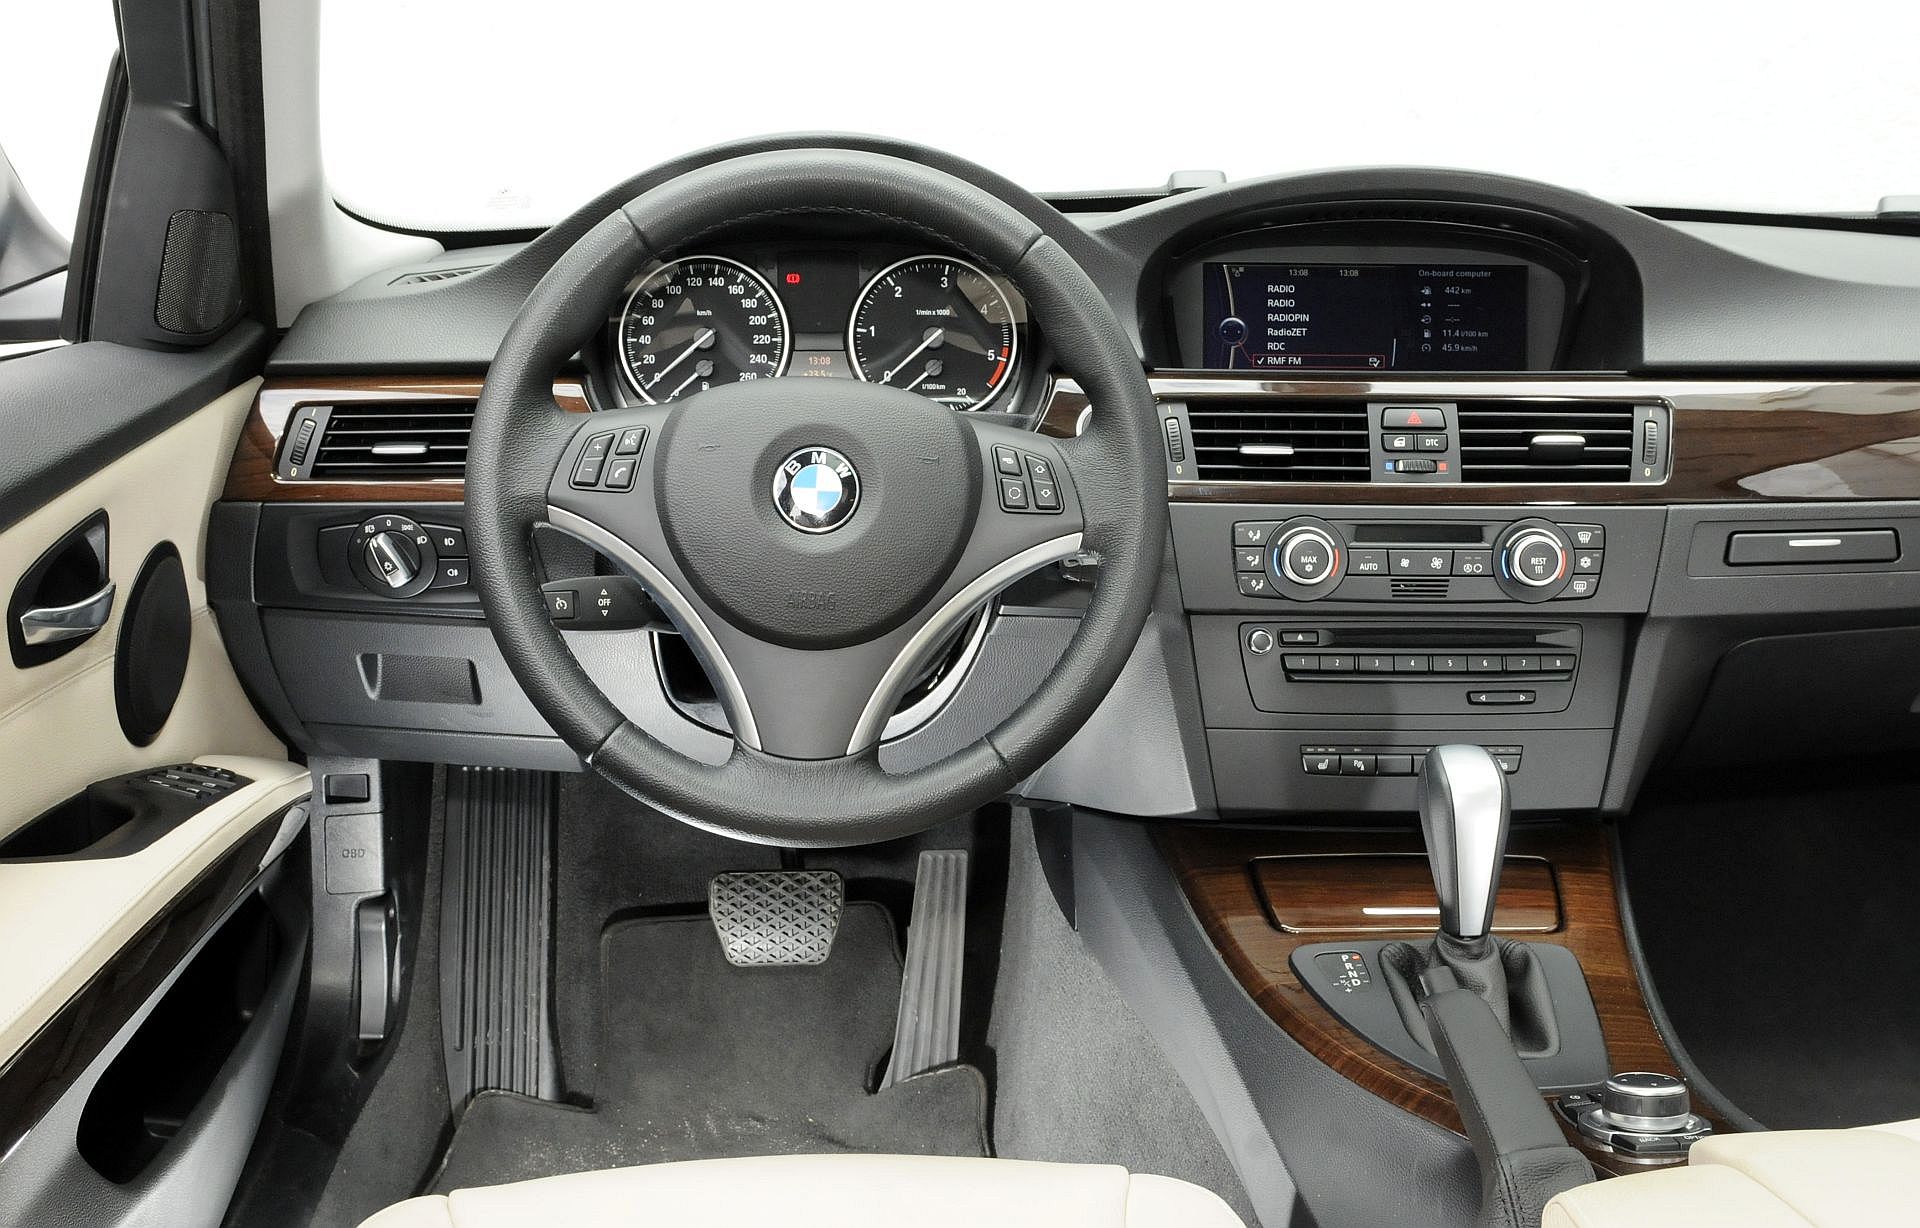 Używane BMW serii 3 (E90) i BMW serii 3 (F30) którą